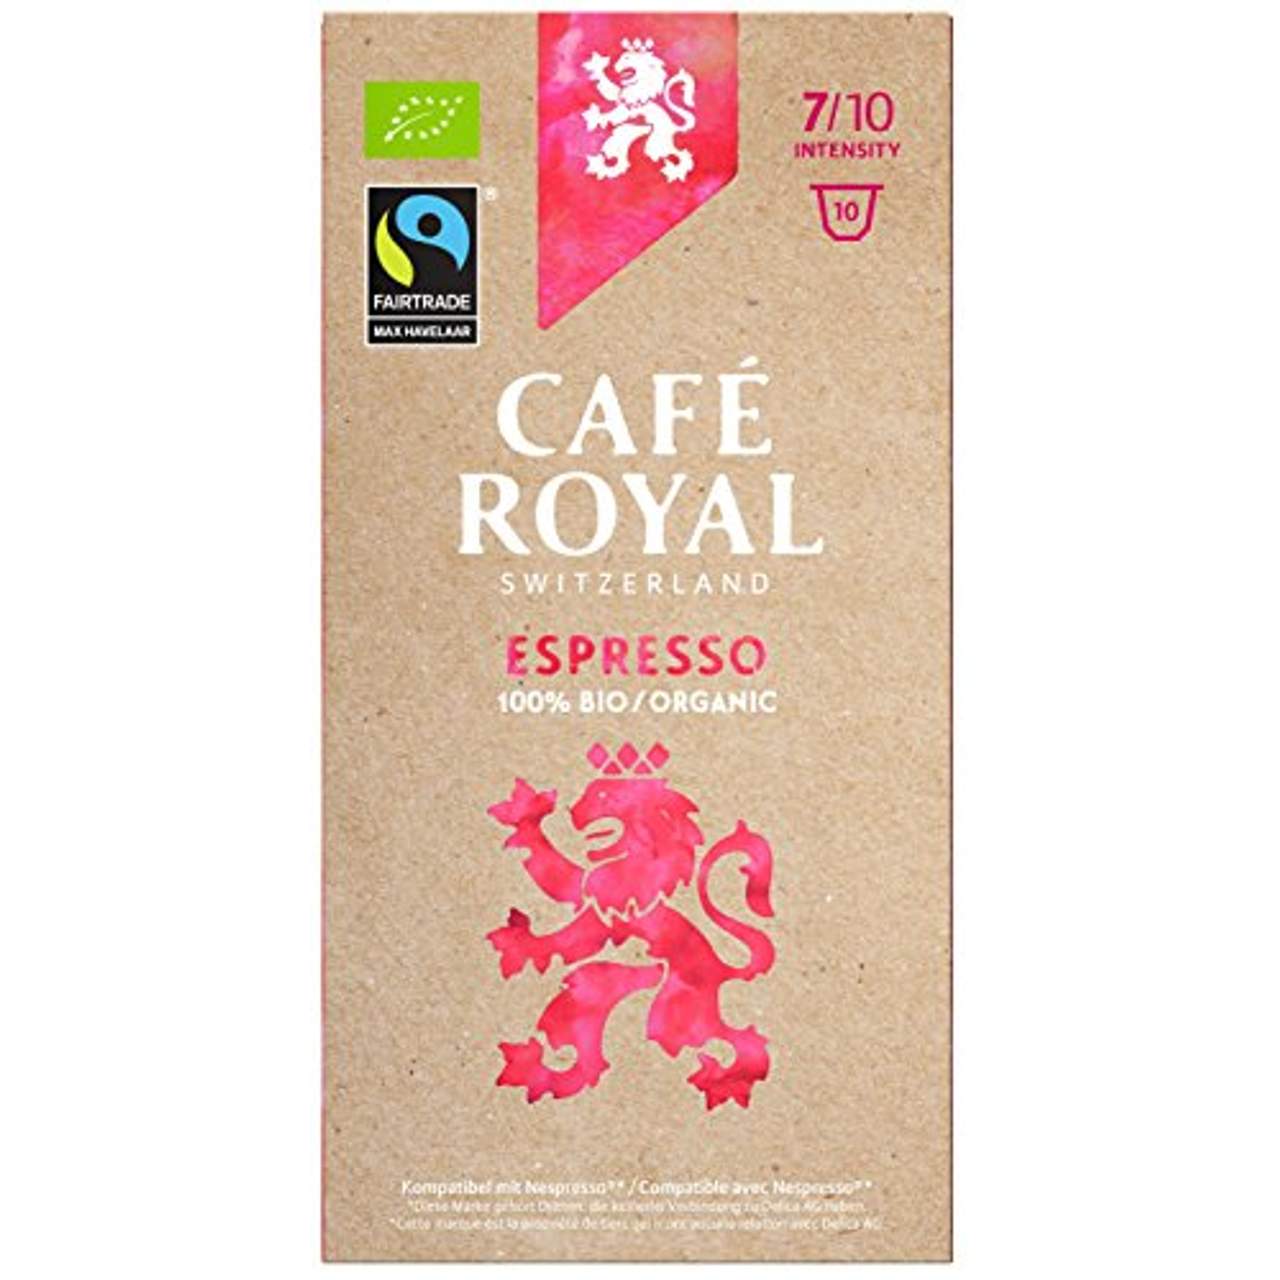 Café Royal Espresso Bio Organic